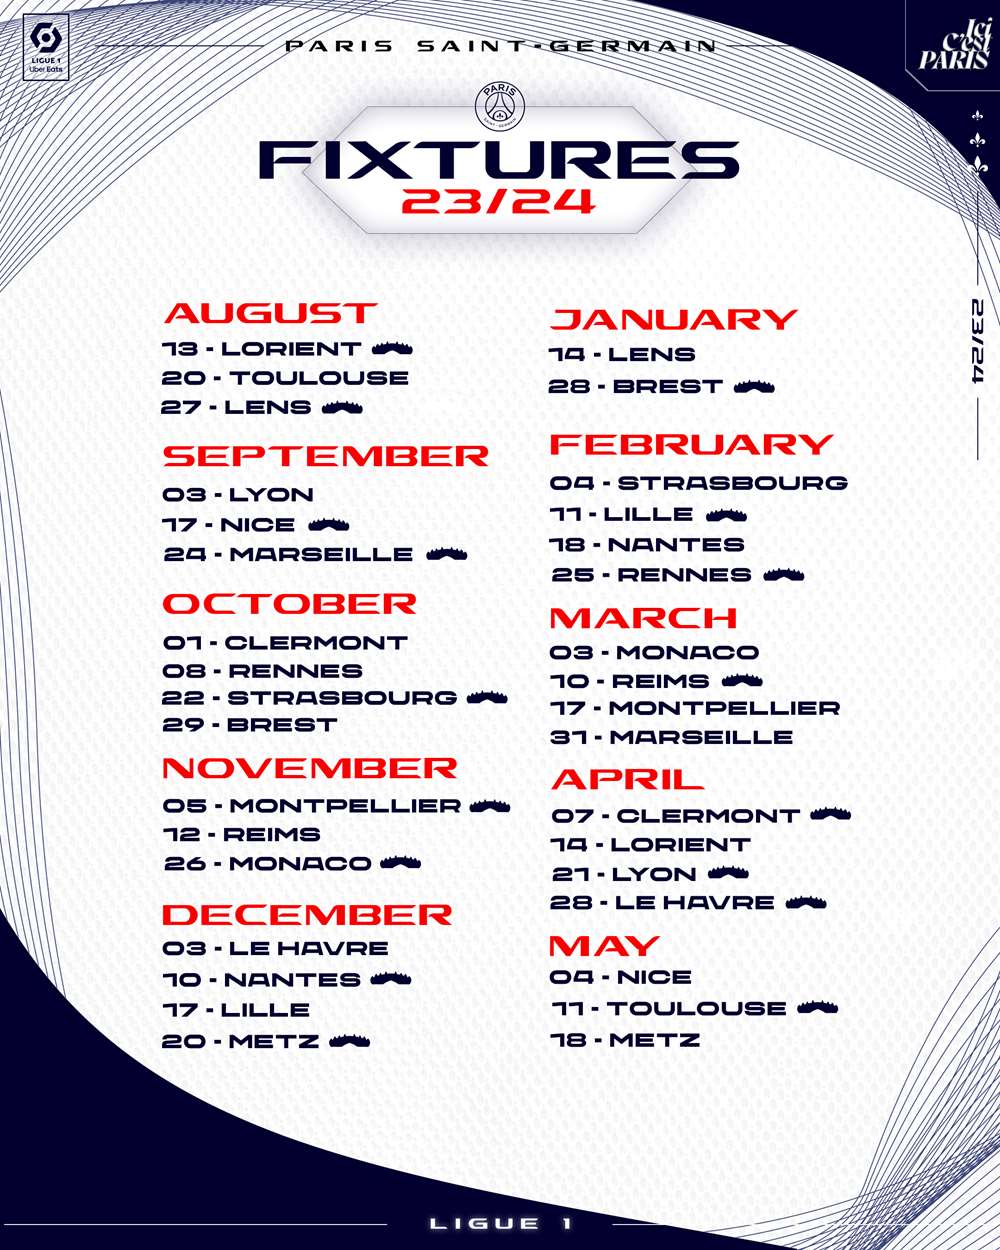 Le calendrier complet du PSG en Ligue des Champions en 2023/24